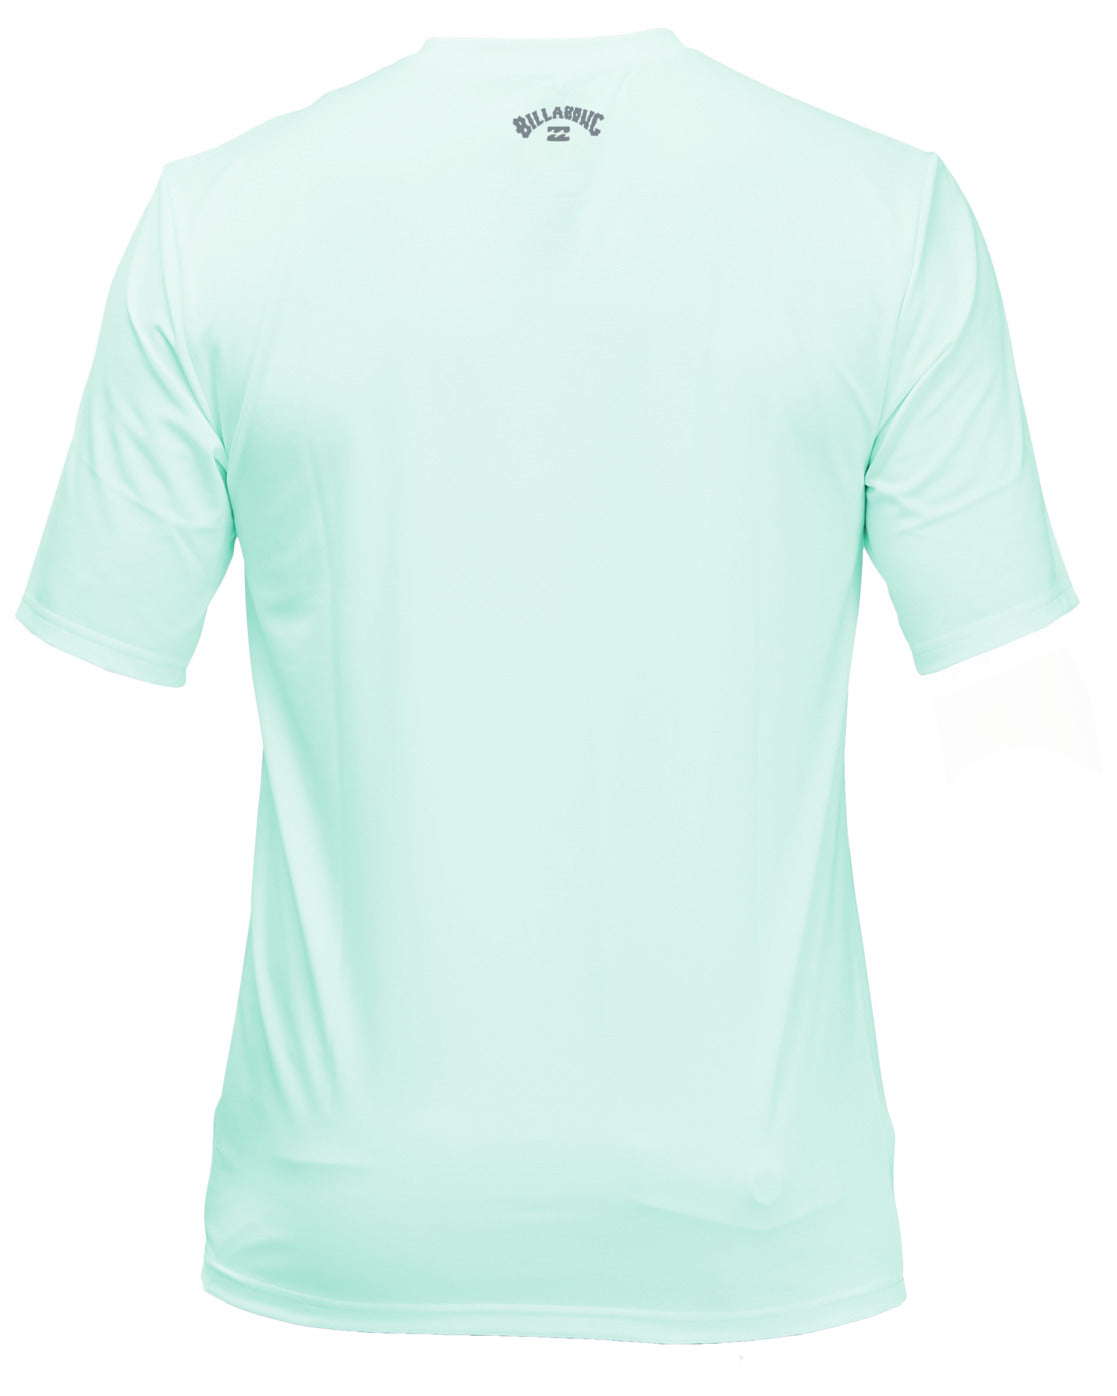 T-Shirt Manche Courte Billabong de couleur Bleu